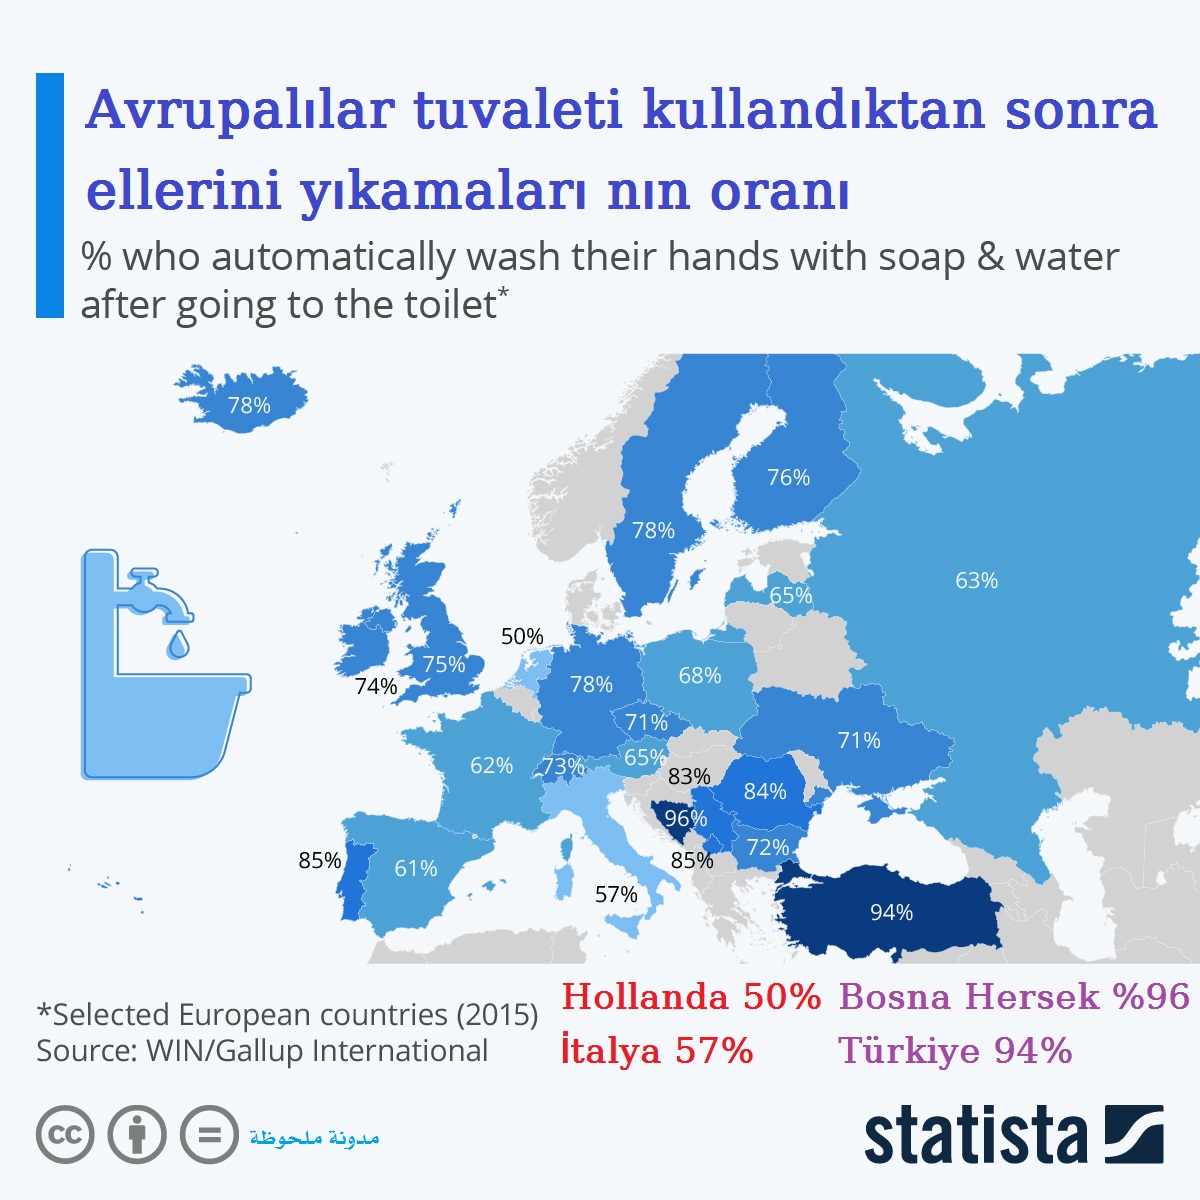 Avrupalılar tuvaleti kullandıktan sonra ellerini yıkamaları nın oranı